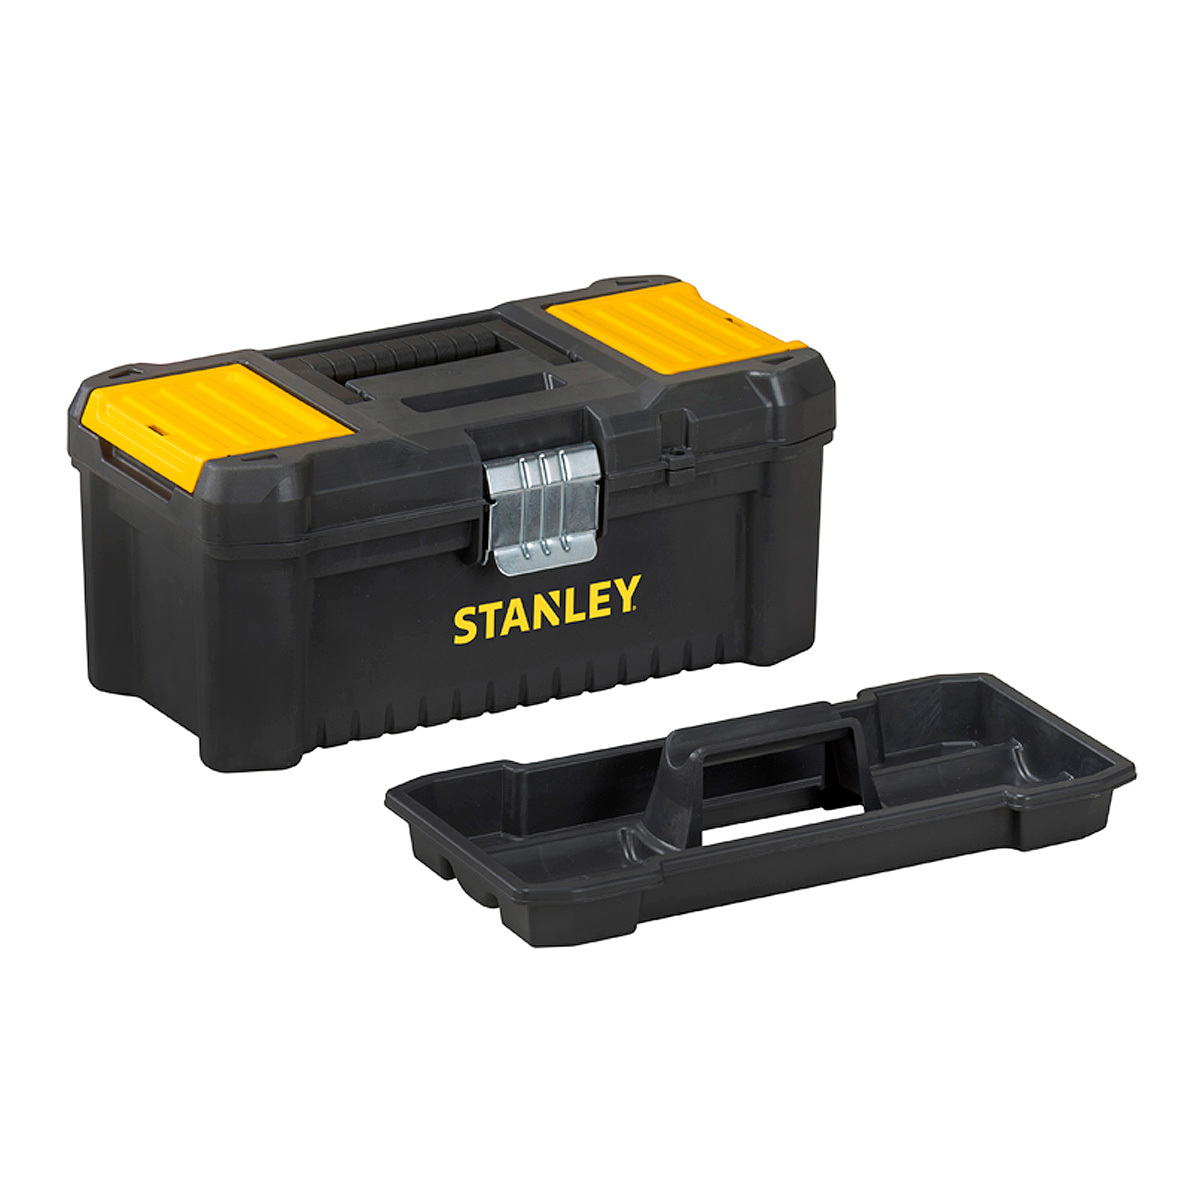 Caja de herramientas Stanley con bandeja